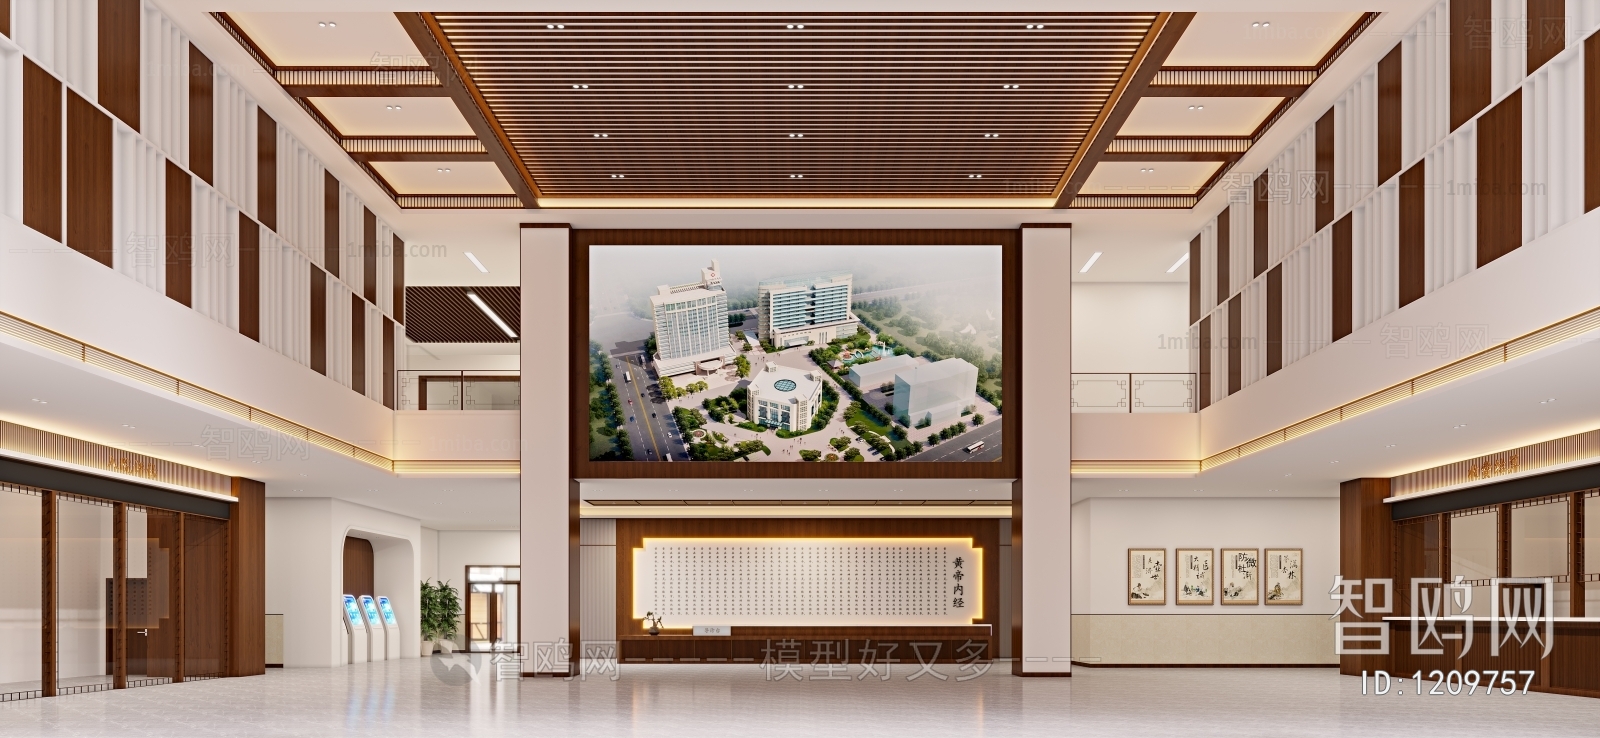 新中式医院大厅